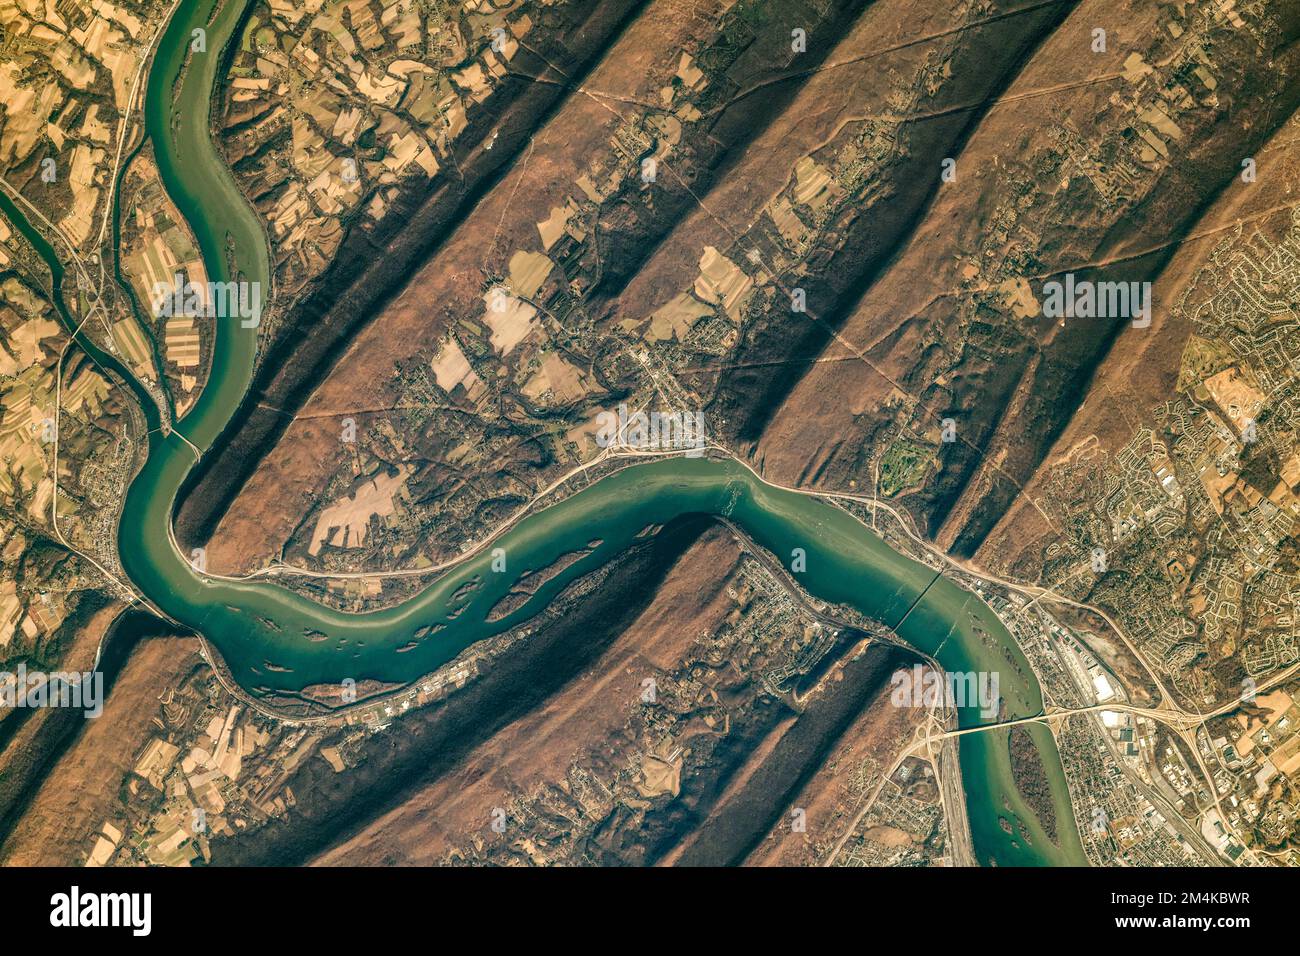 La rivière Susquehanna traverse les plis de la province de Valley-and-Ridge, dans les Appalaches. Amélioration numérique. Éléments d'image de la NASA Banque D'Images